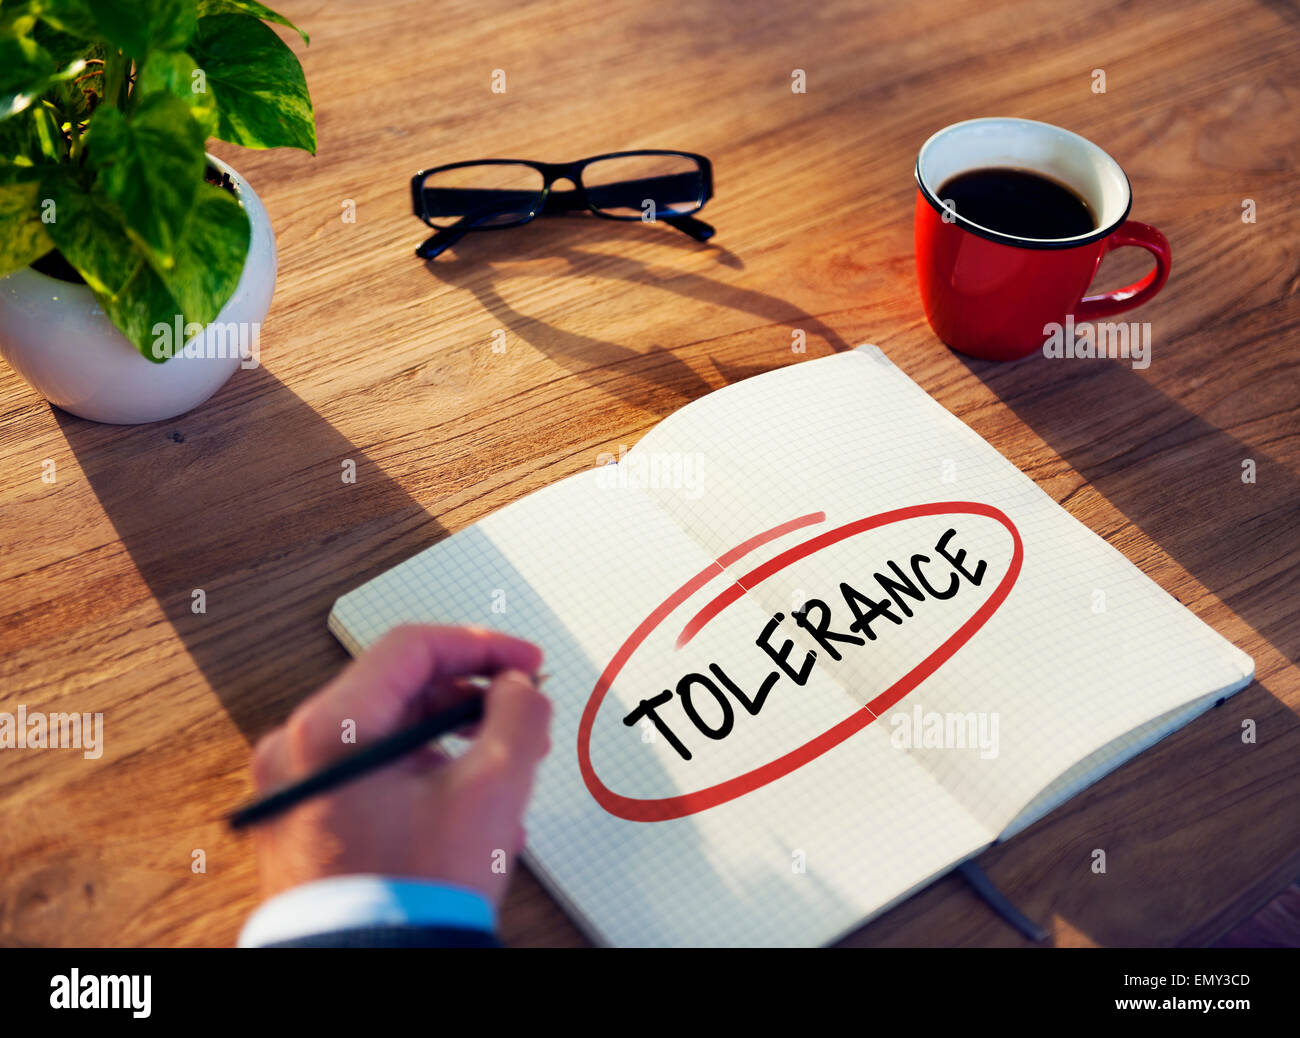 Empresario de escribir la palabra "Tolerancia" Foto de stock